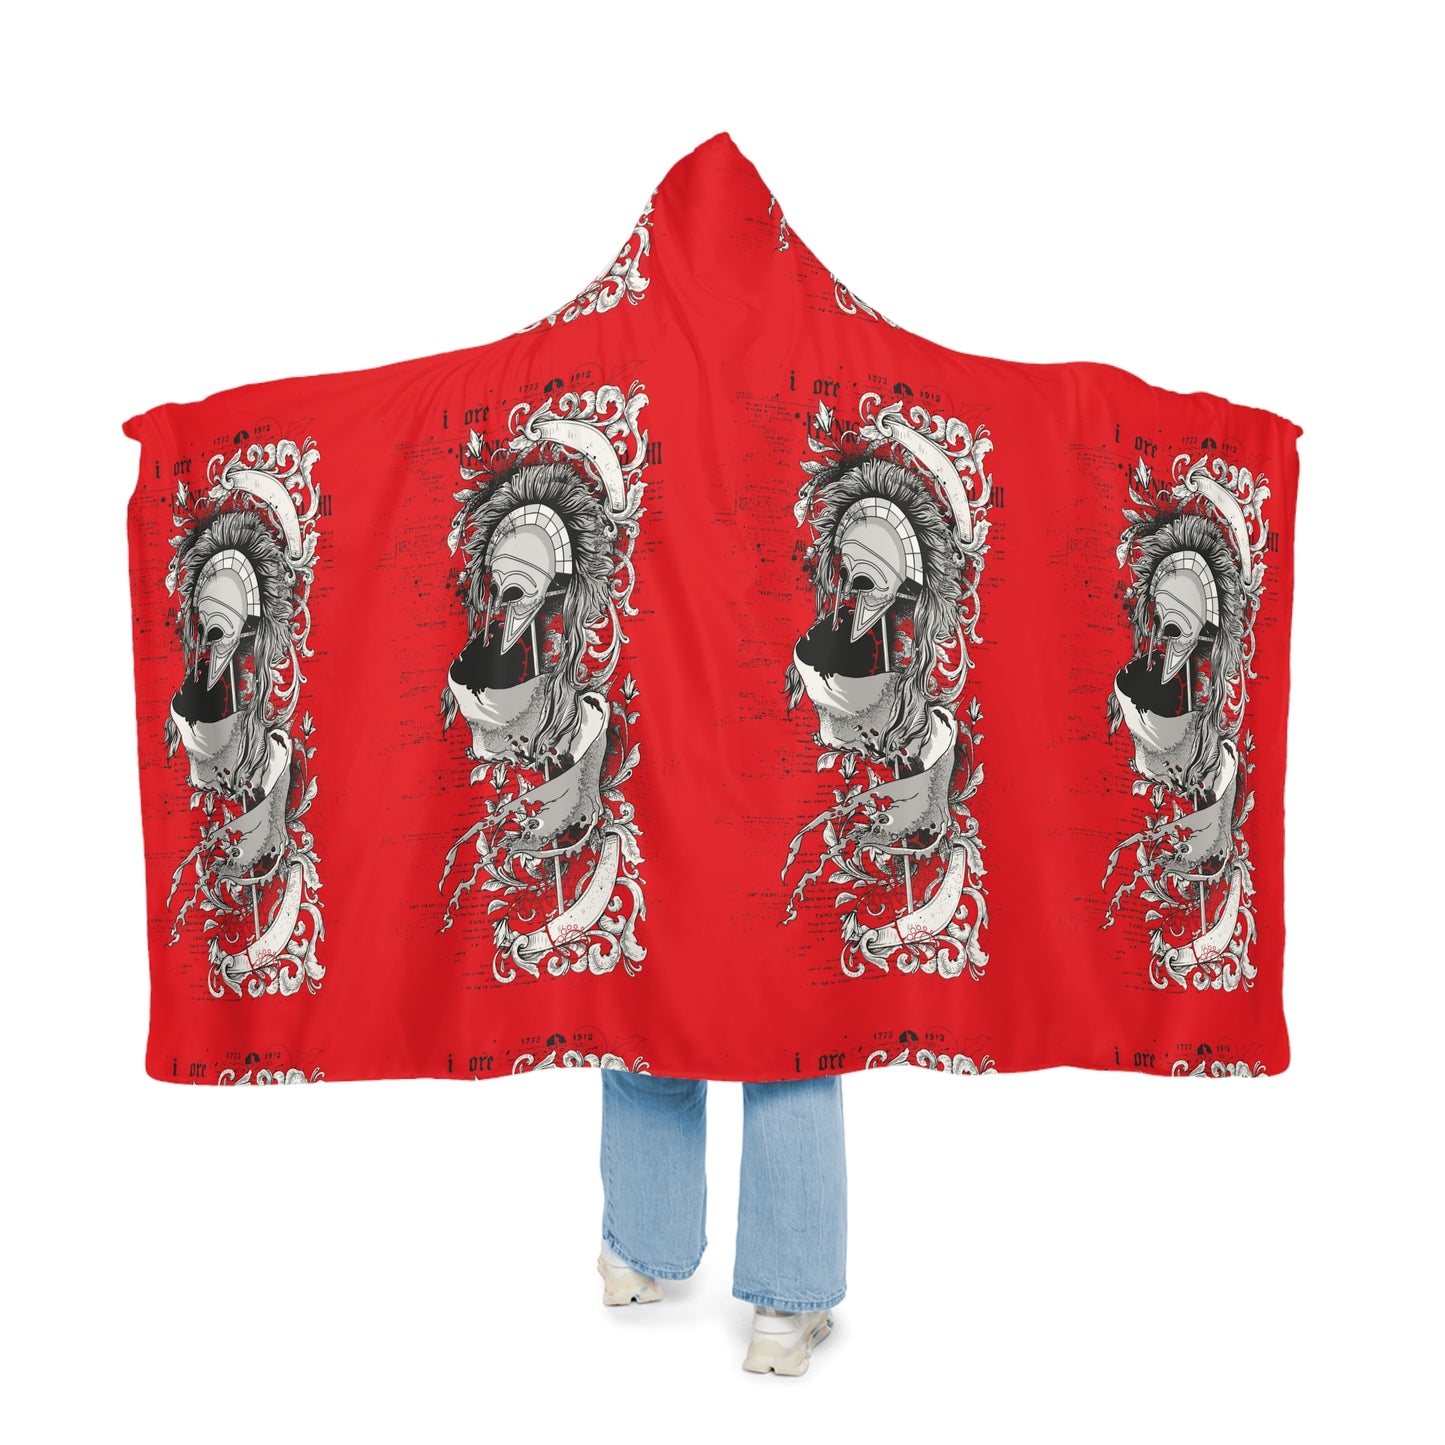 Snuggle Centurion Blanket (Red)